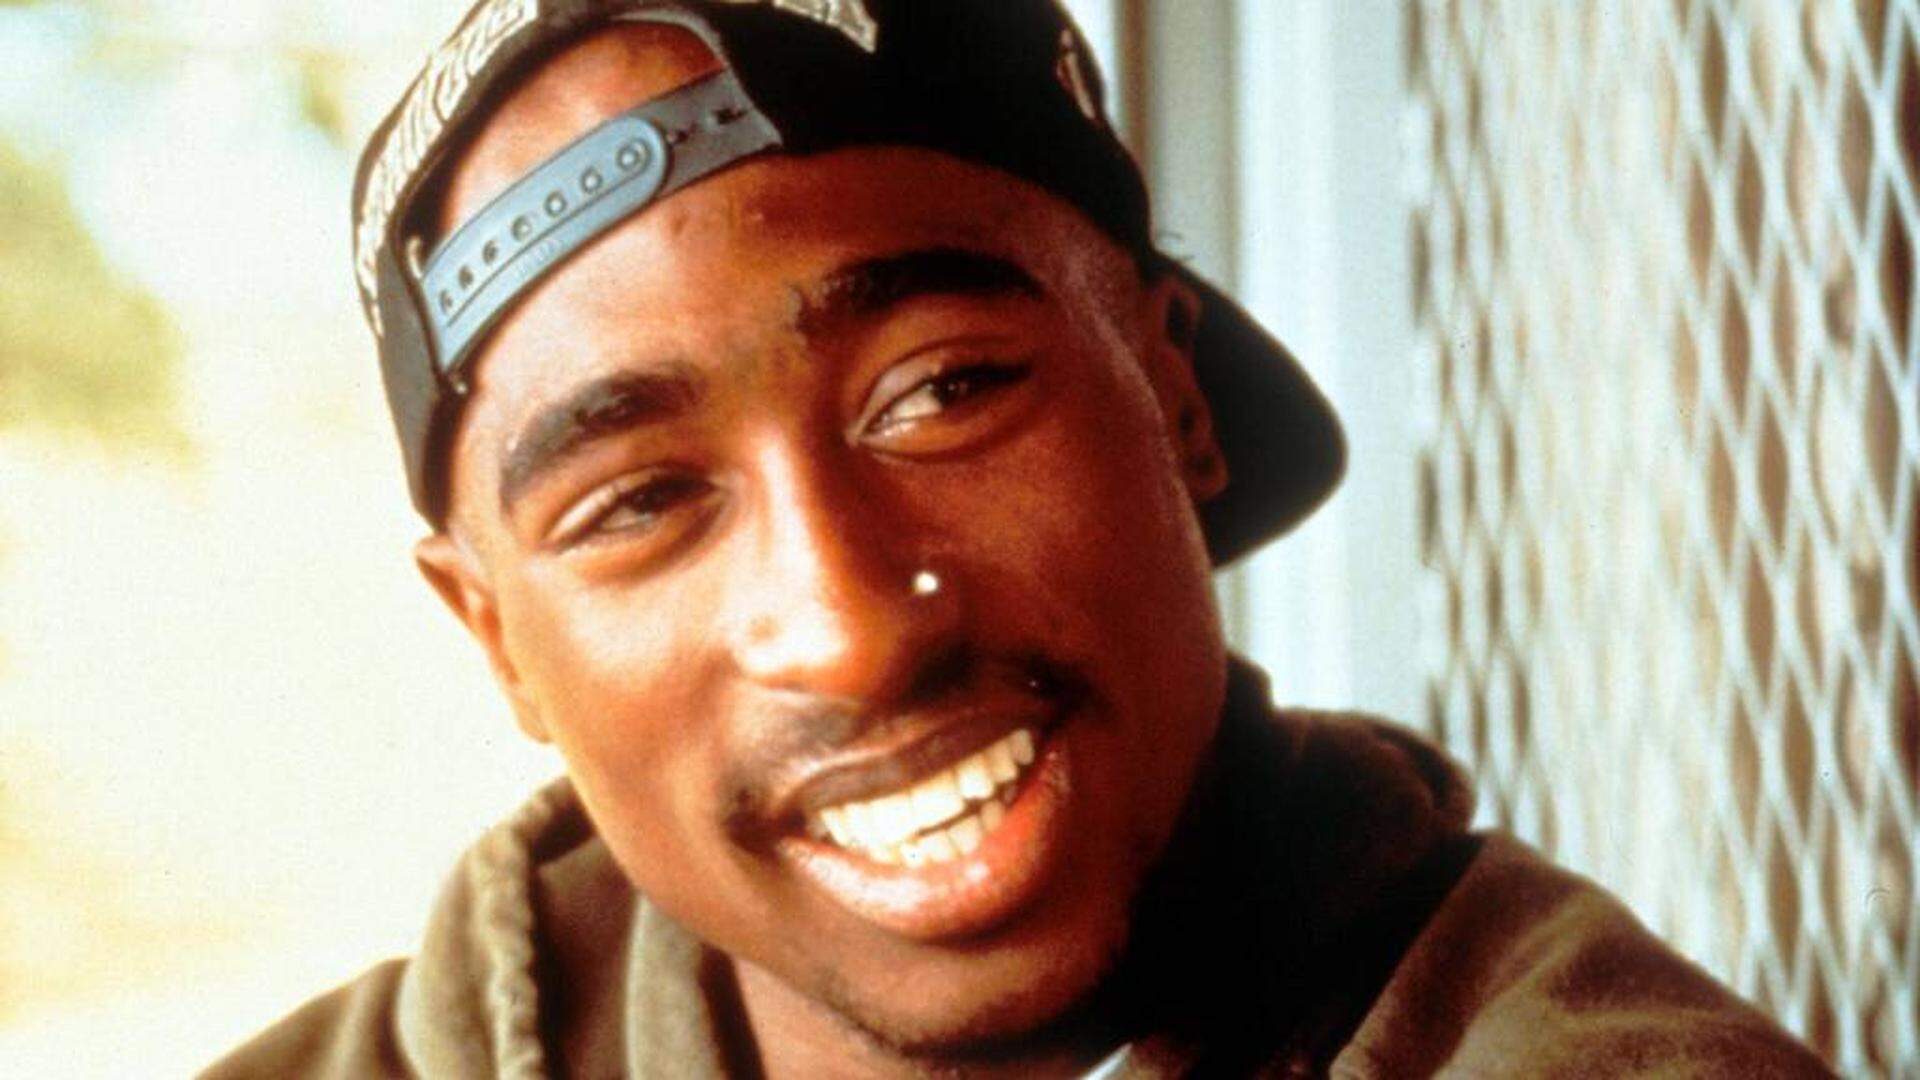 Der Rapper wurde im Jahr 1996 auf offene Straße im Alter von 25 Jahren erschossen.